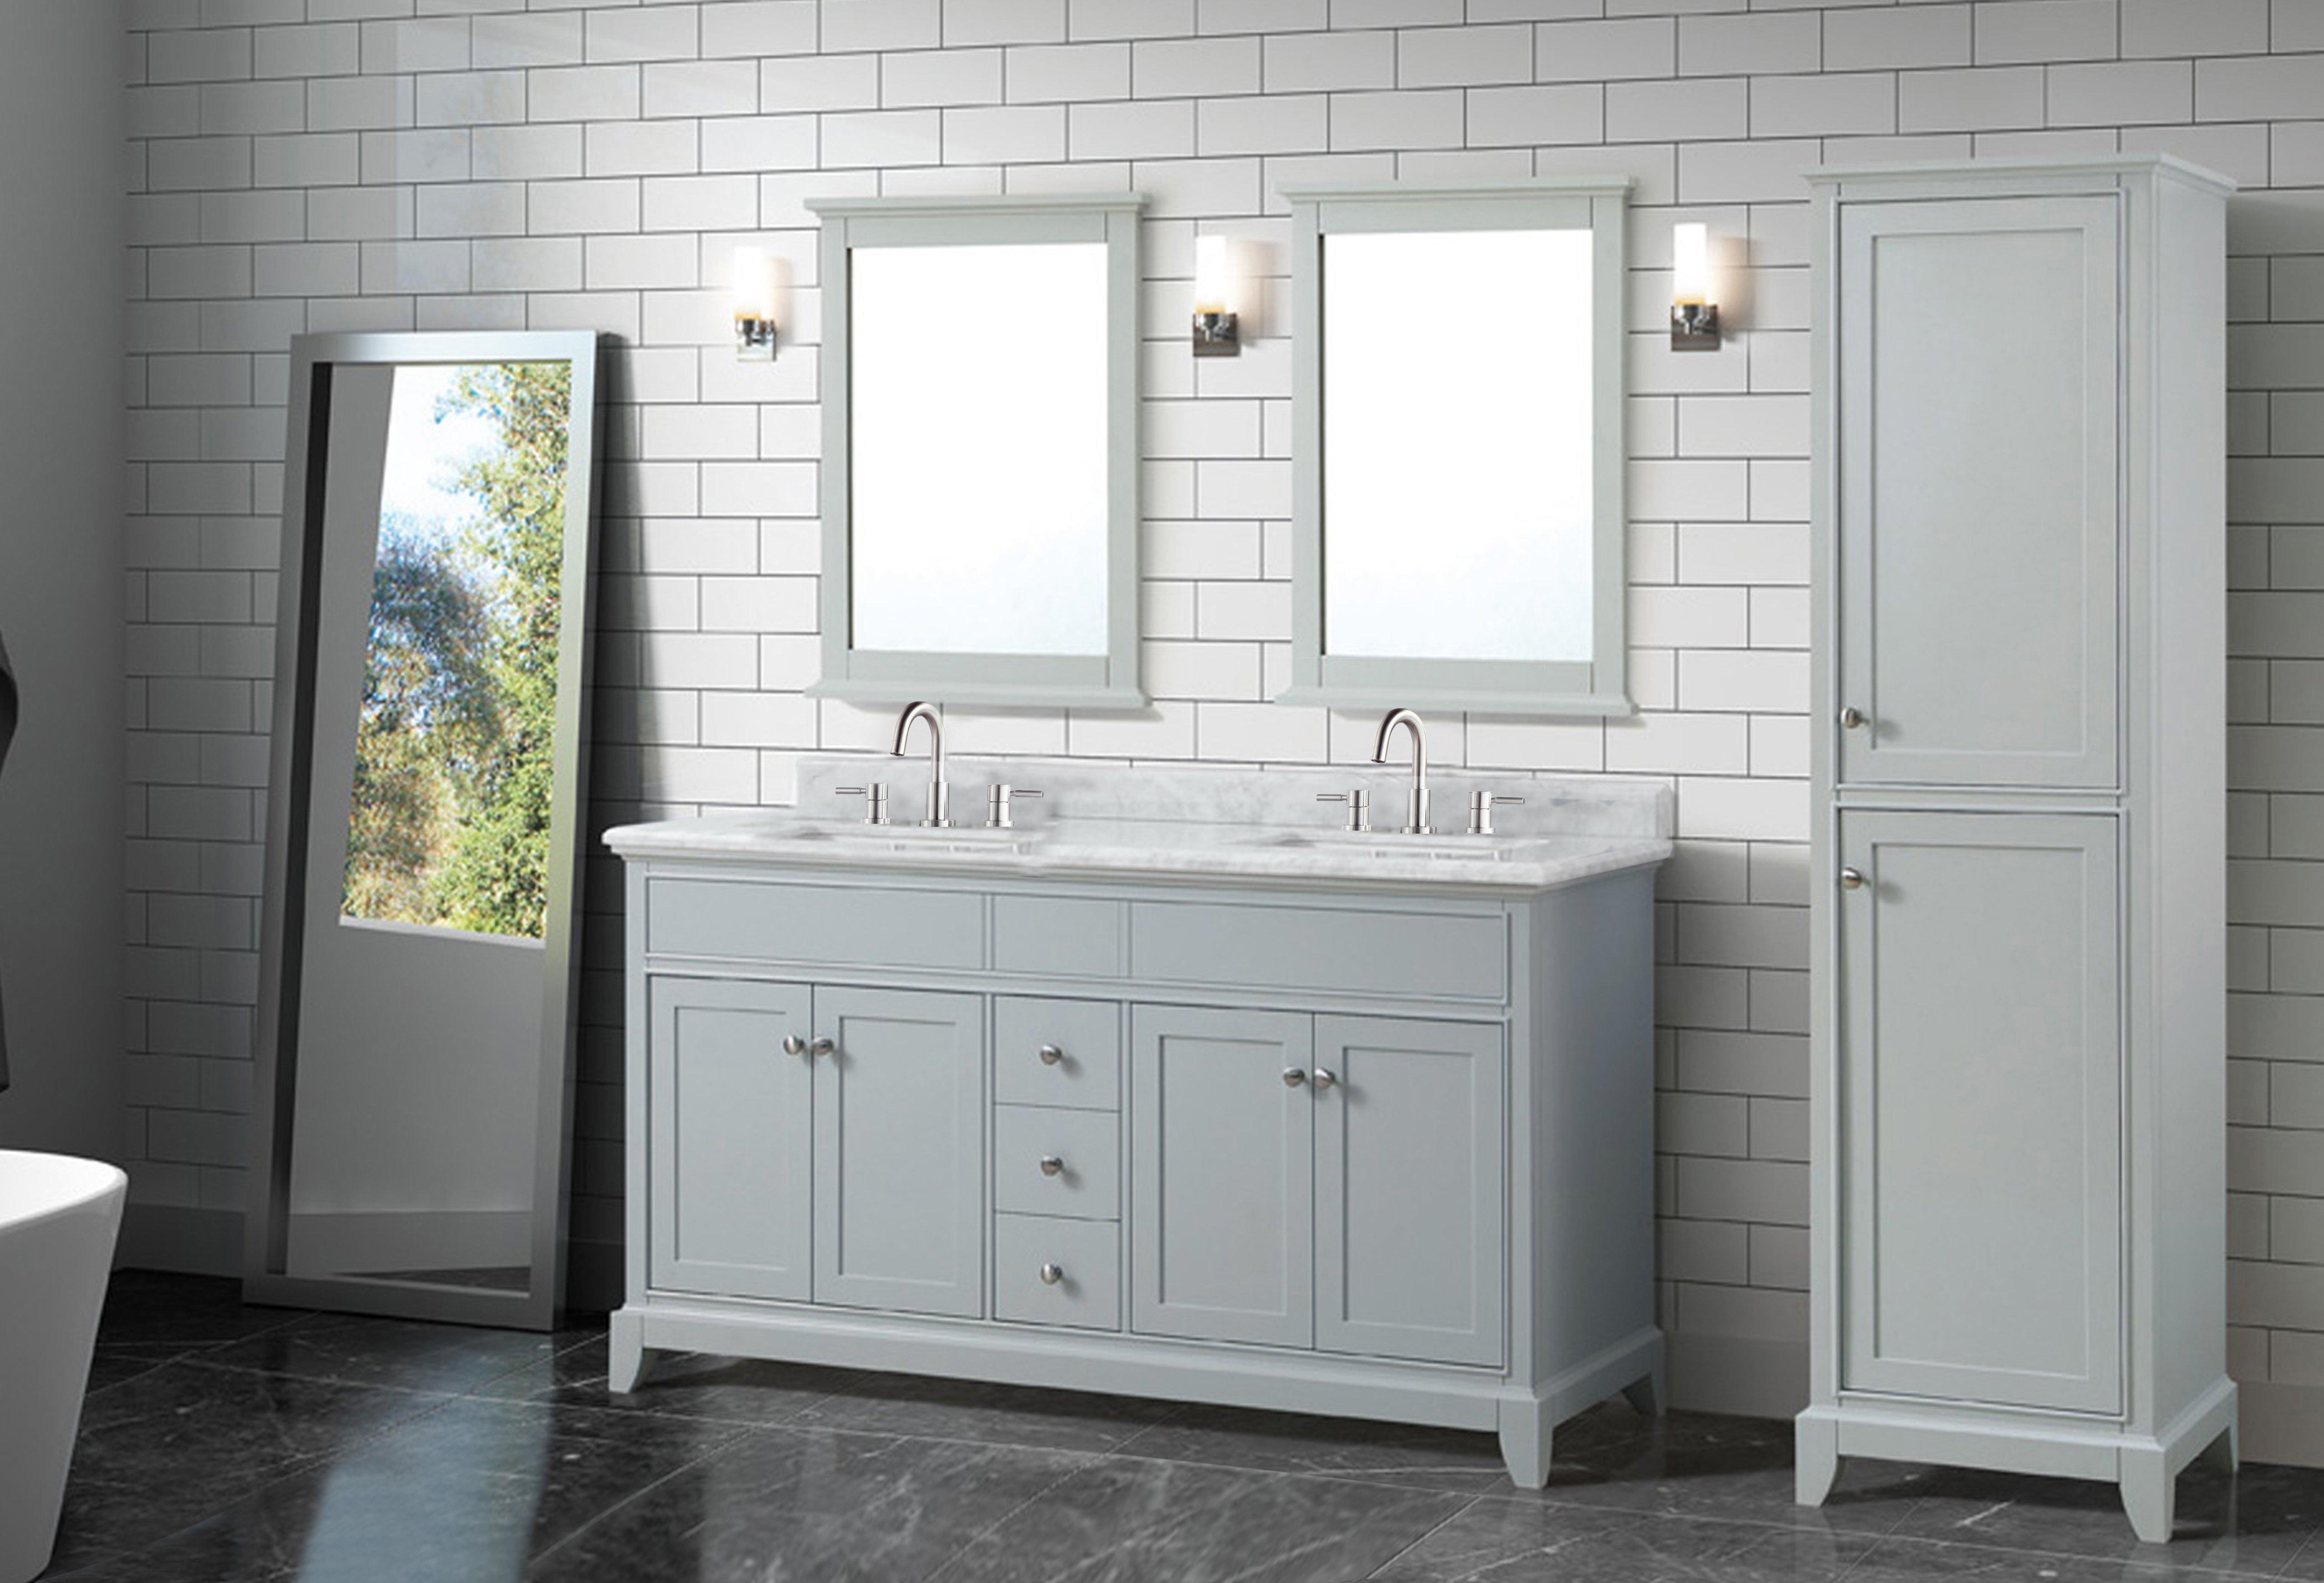 In Vanity With Carrara Marble Top, Vanity In The Bathroom